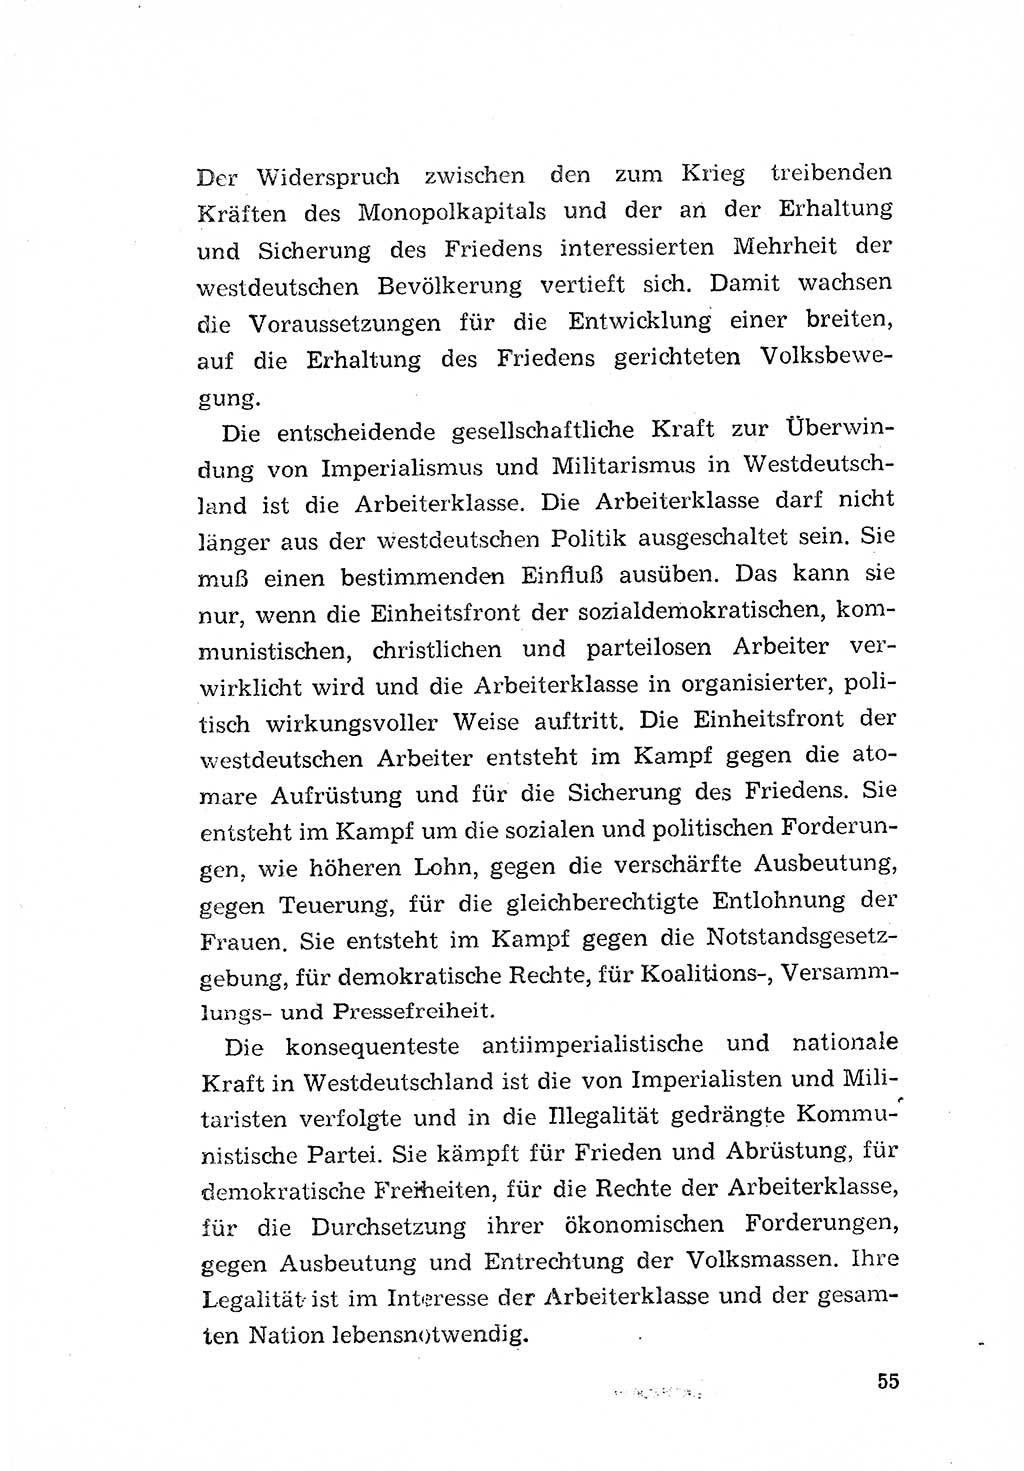 Programm der Sozialistischen Einheitspartei Deutschlands (SED) [Deutsche Demokratische Republik (DDR)] 1963, Seite 55 (Progr. SED DDR 1963, S. 55)